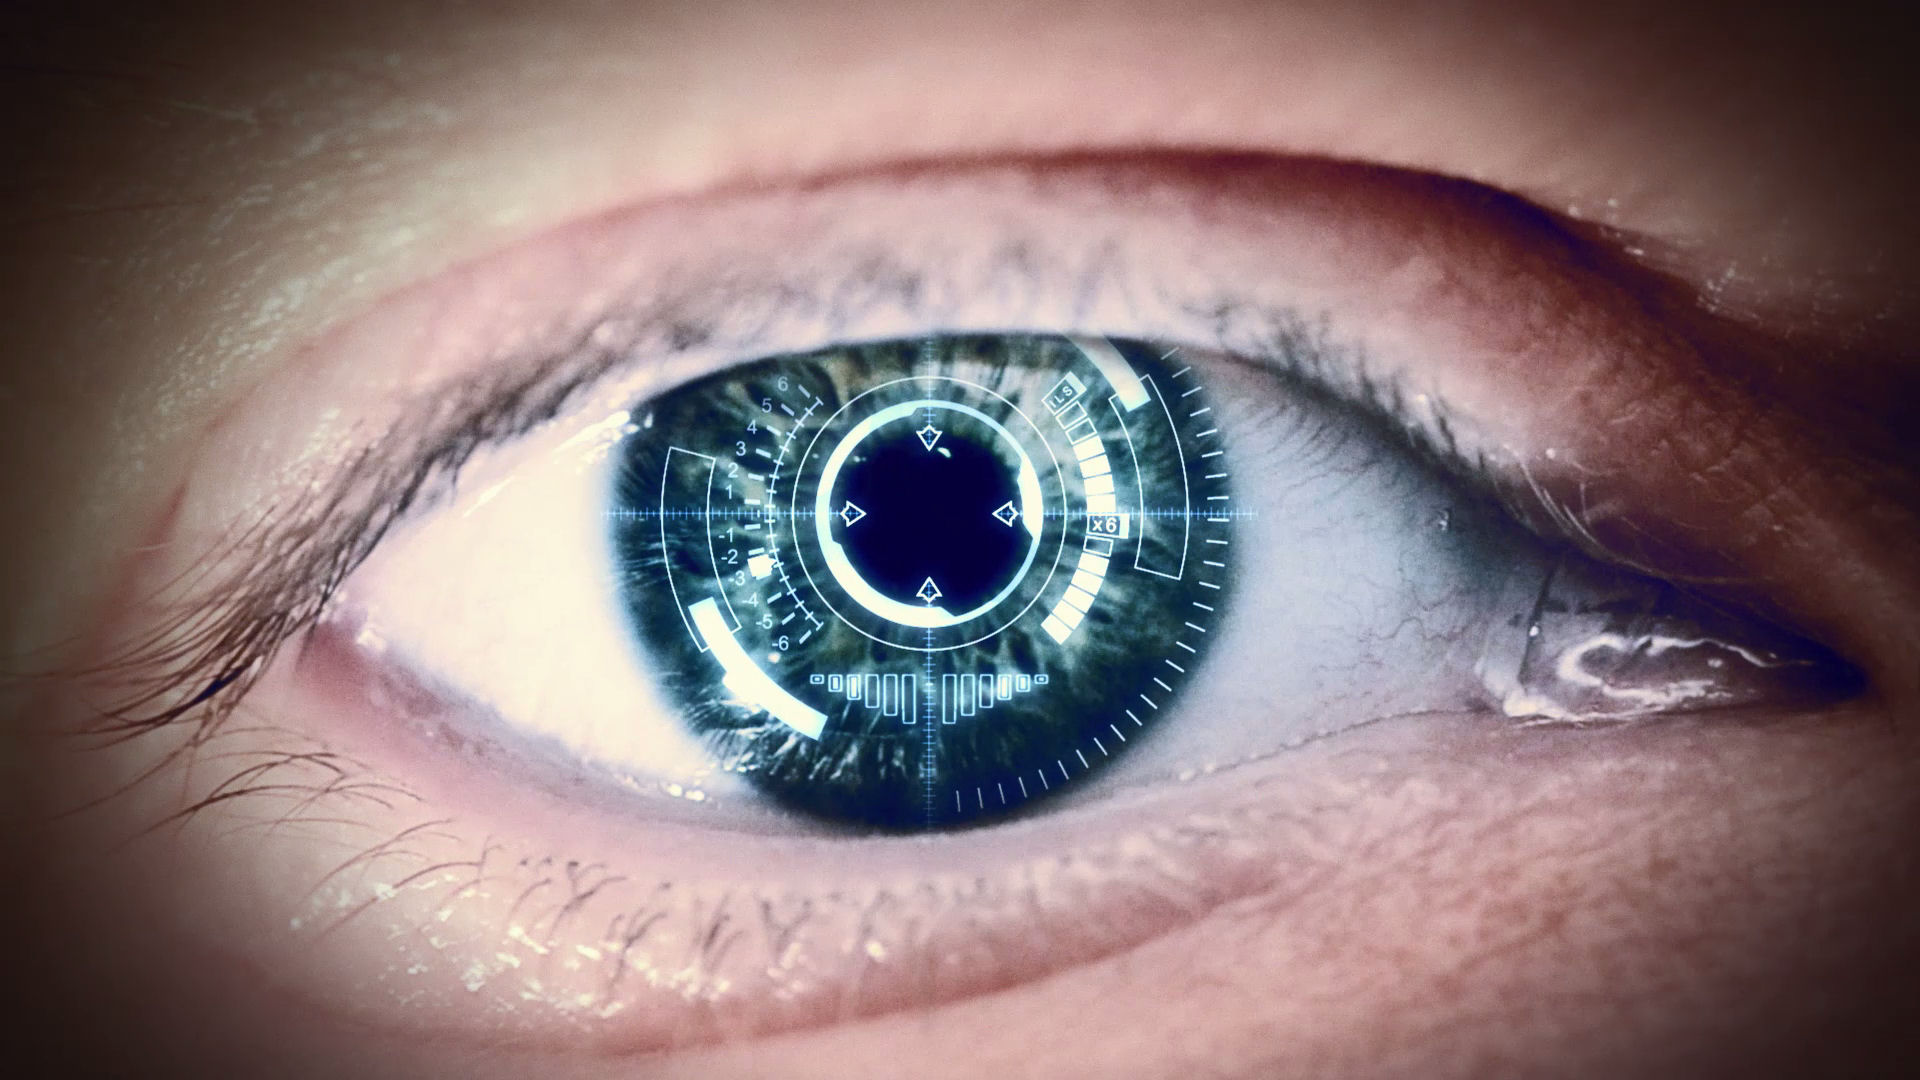 Eye scene. Контактные линзы Mojo Vision. Бионические линзы для сверхчеловеческого зрения. Человеческий глаз. Контактные линзы будущего.